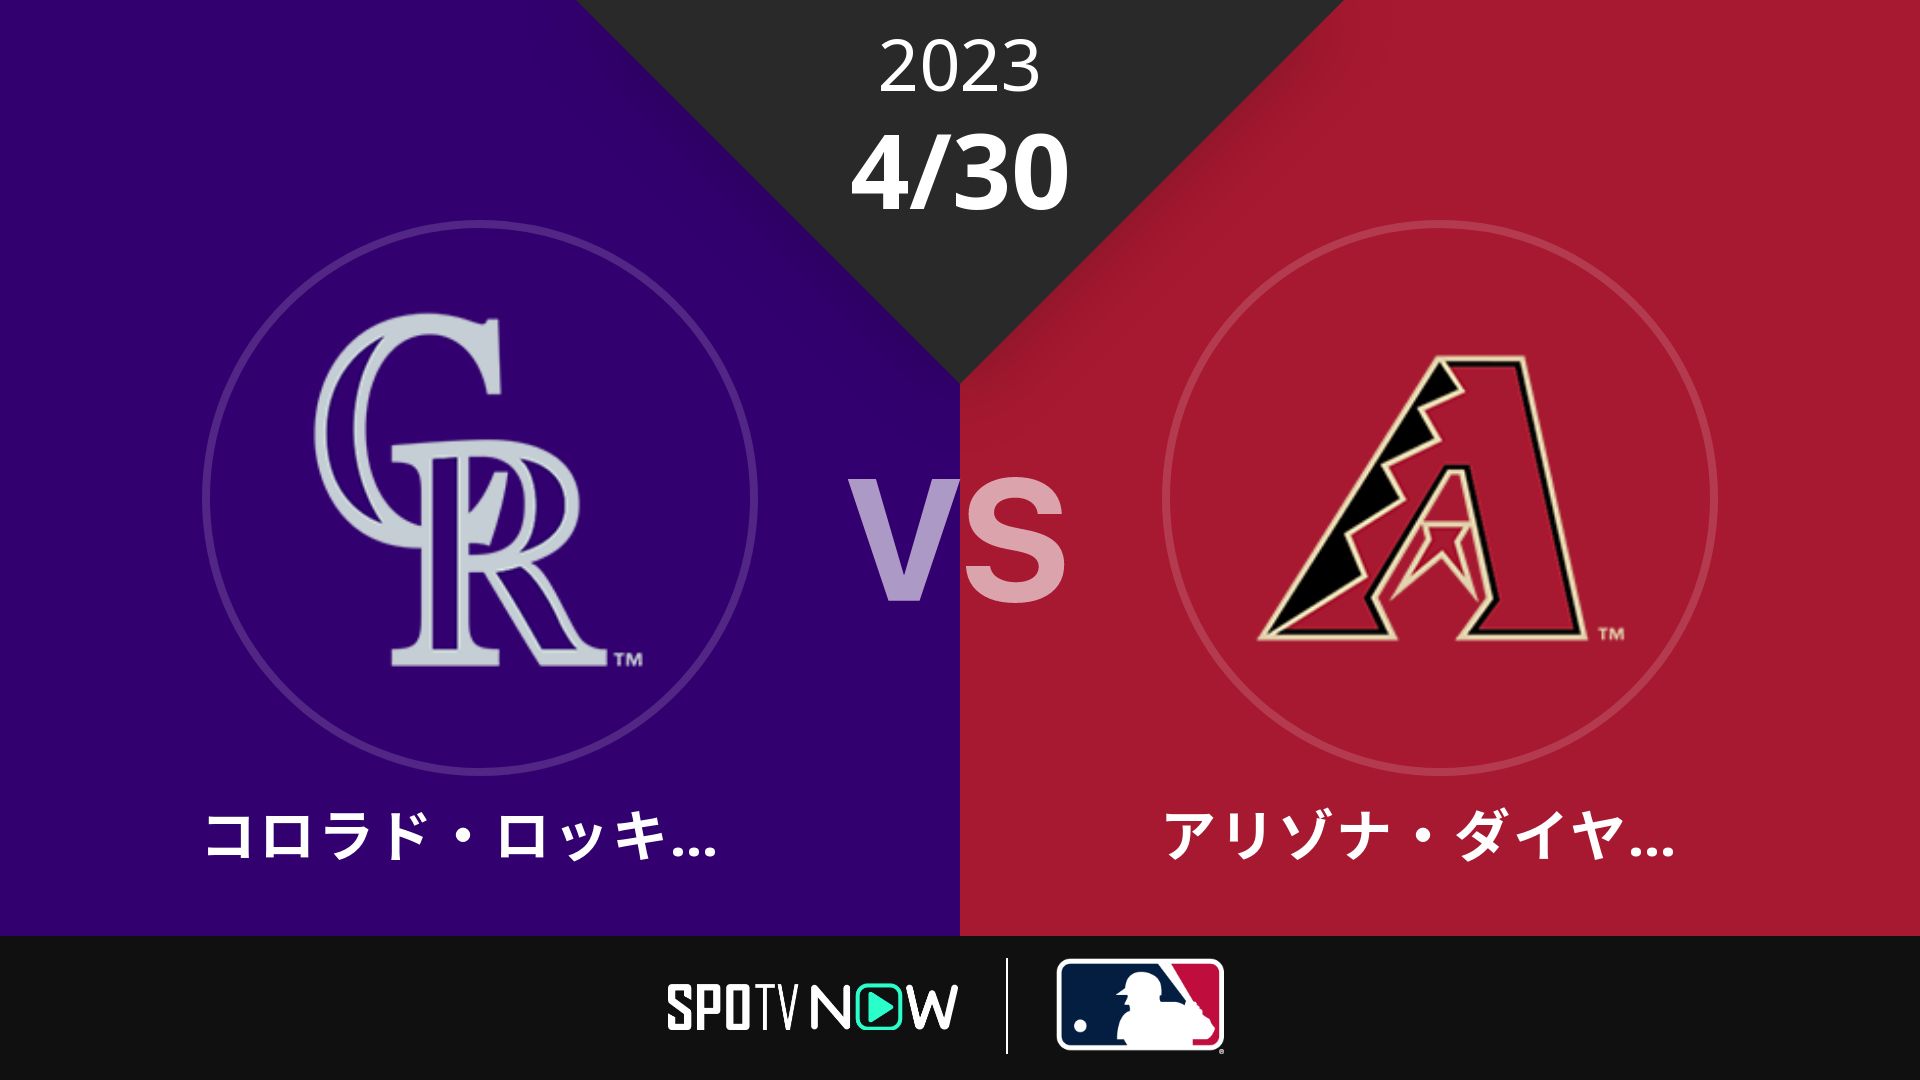 2023/4/30 ロッキーズ vs Dバックス [MLB]